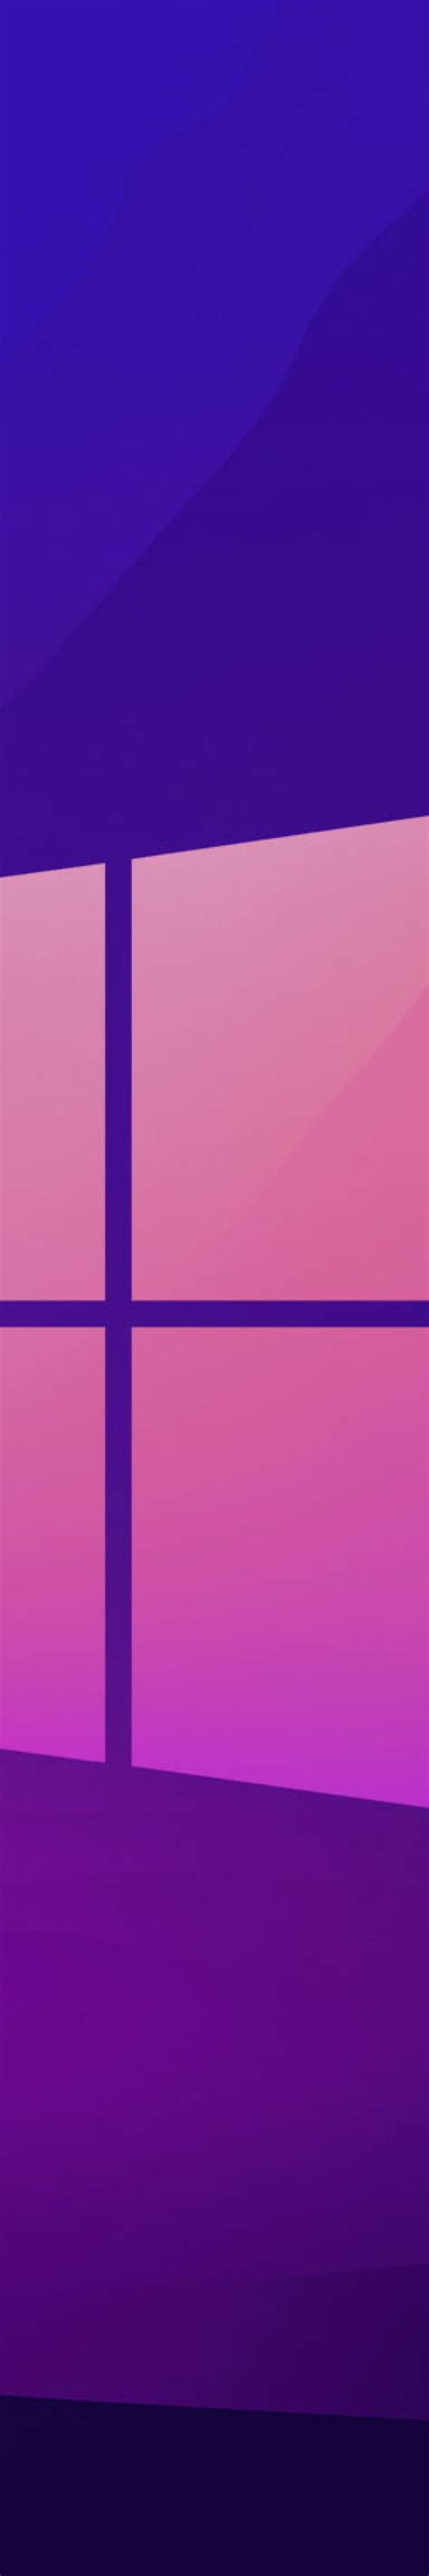 1500x9000 Windows 11 Hd Gradient 1500x9000 Resolution Wallpaper Hd